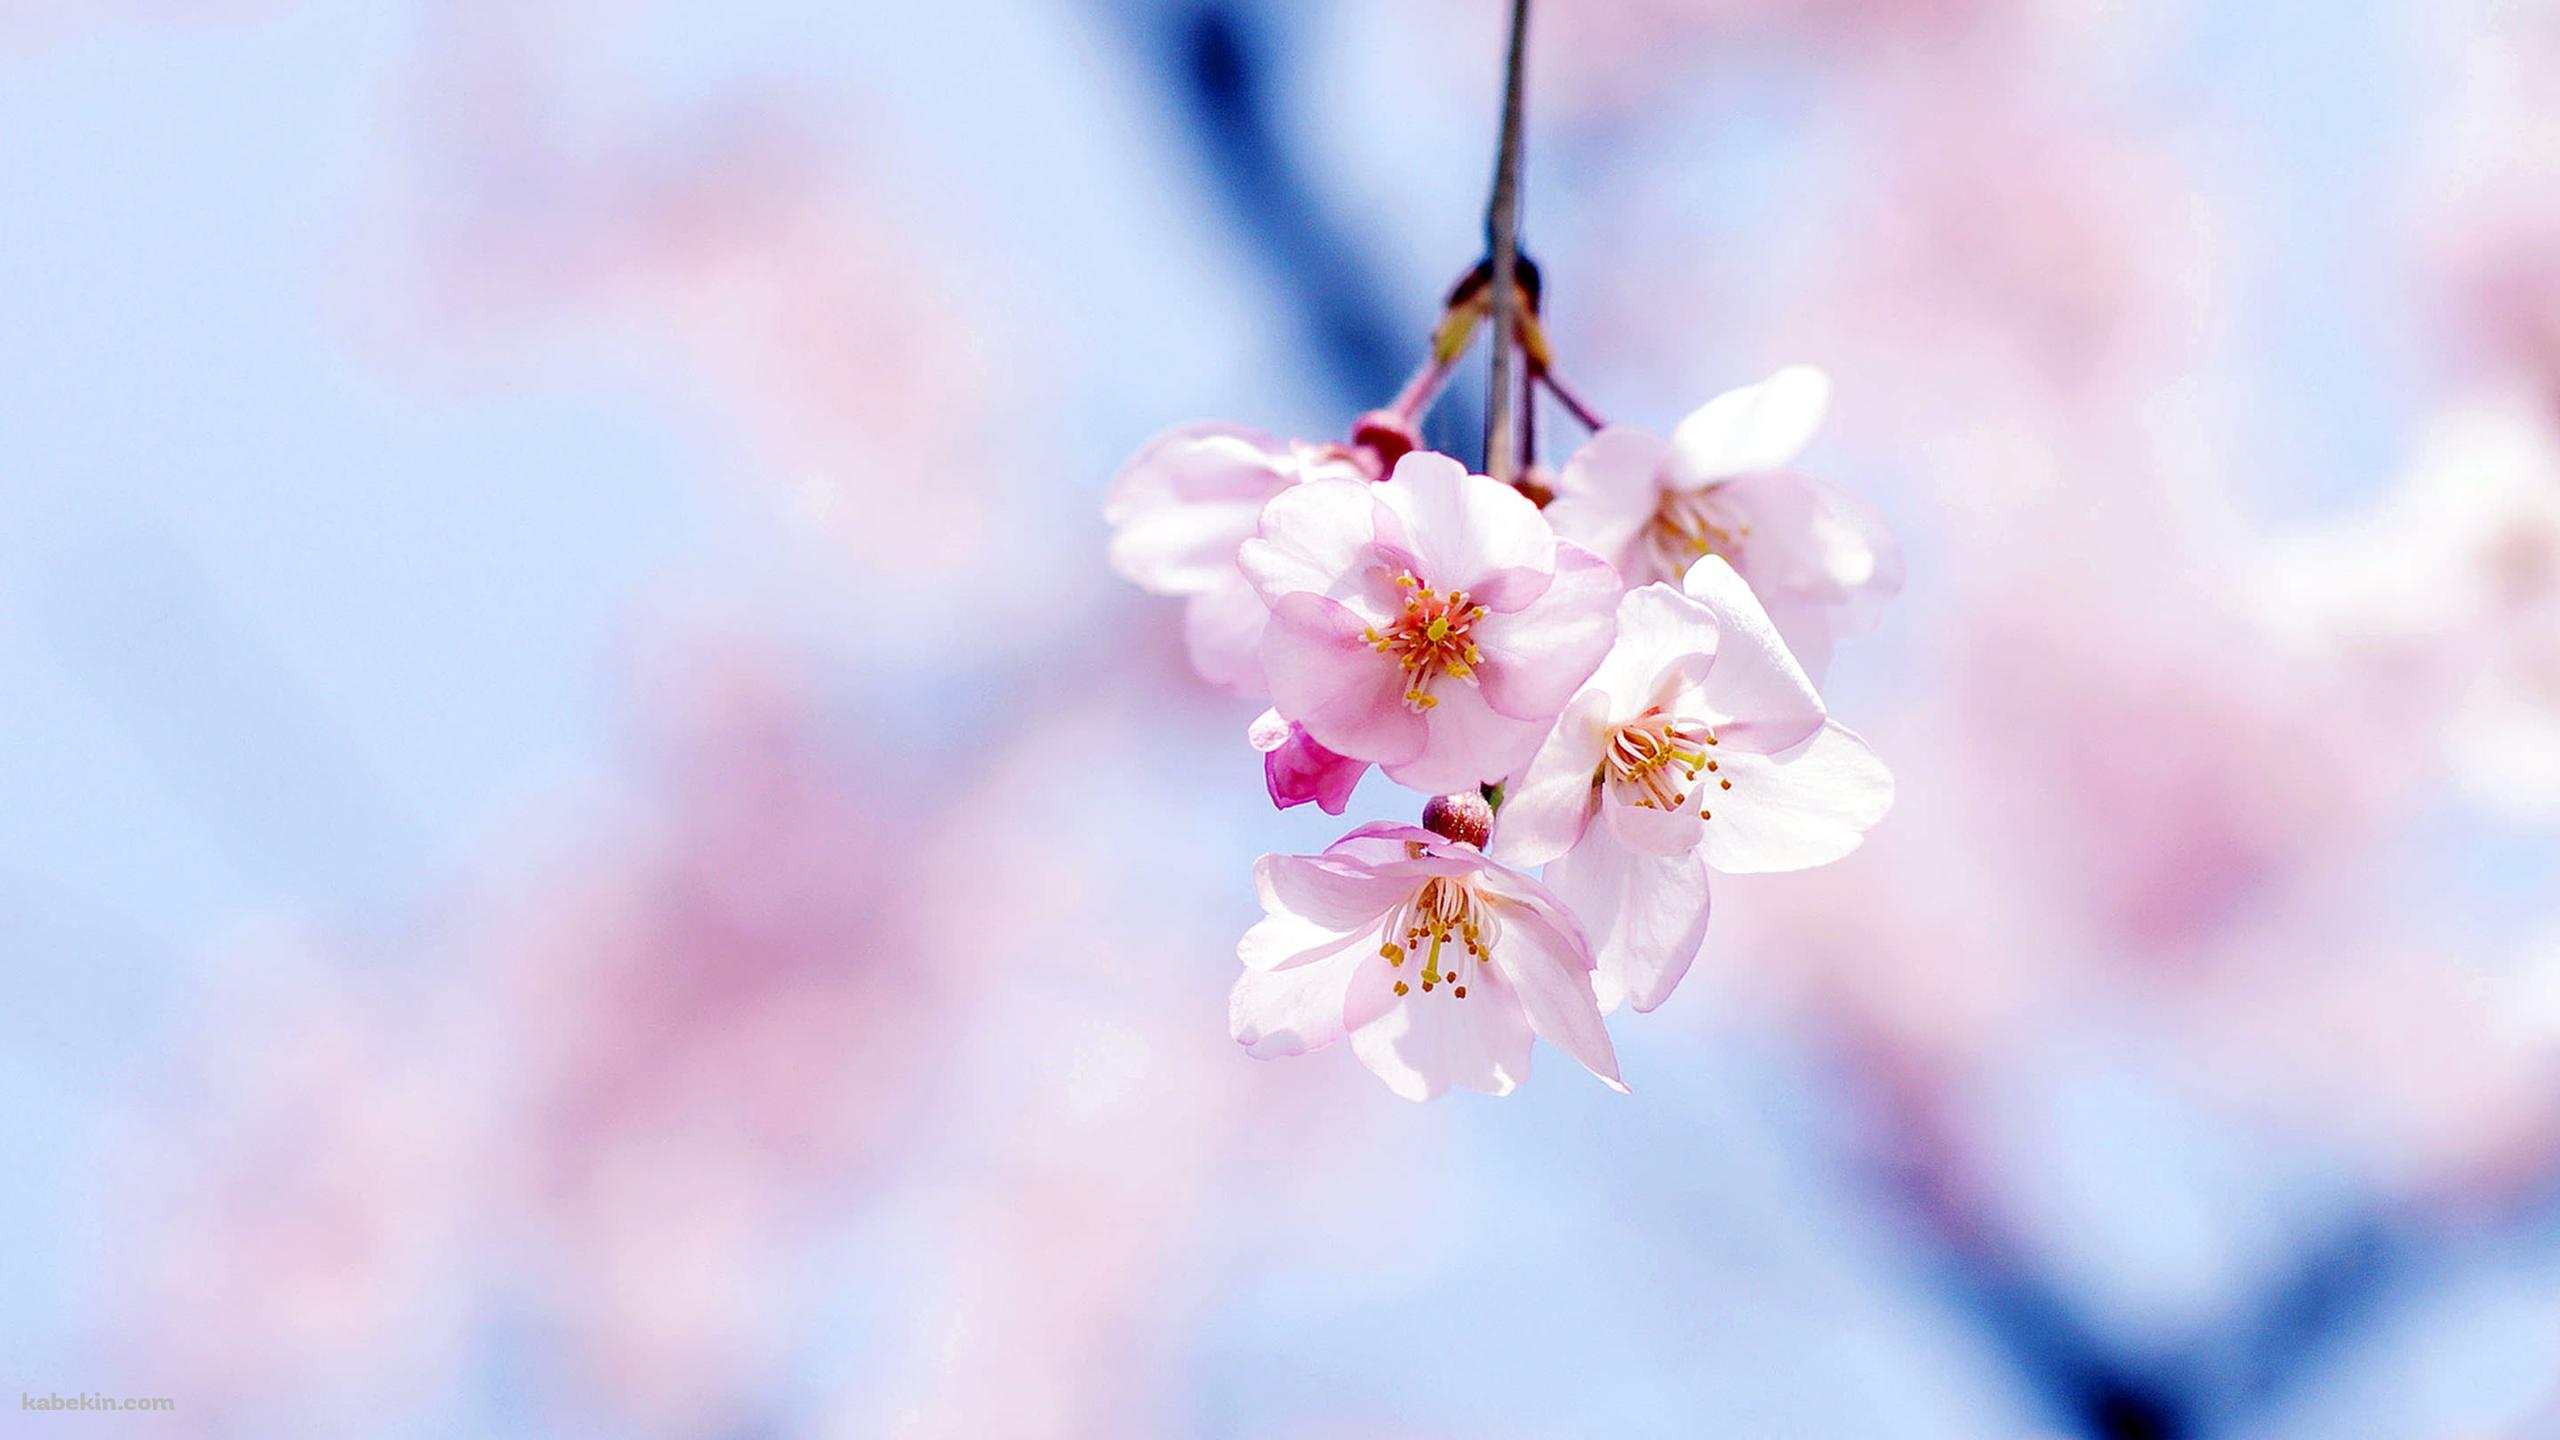 綺麗な桜の花の壁紙(2560px x 1440px) 高画質 PC・デスクトップ用